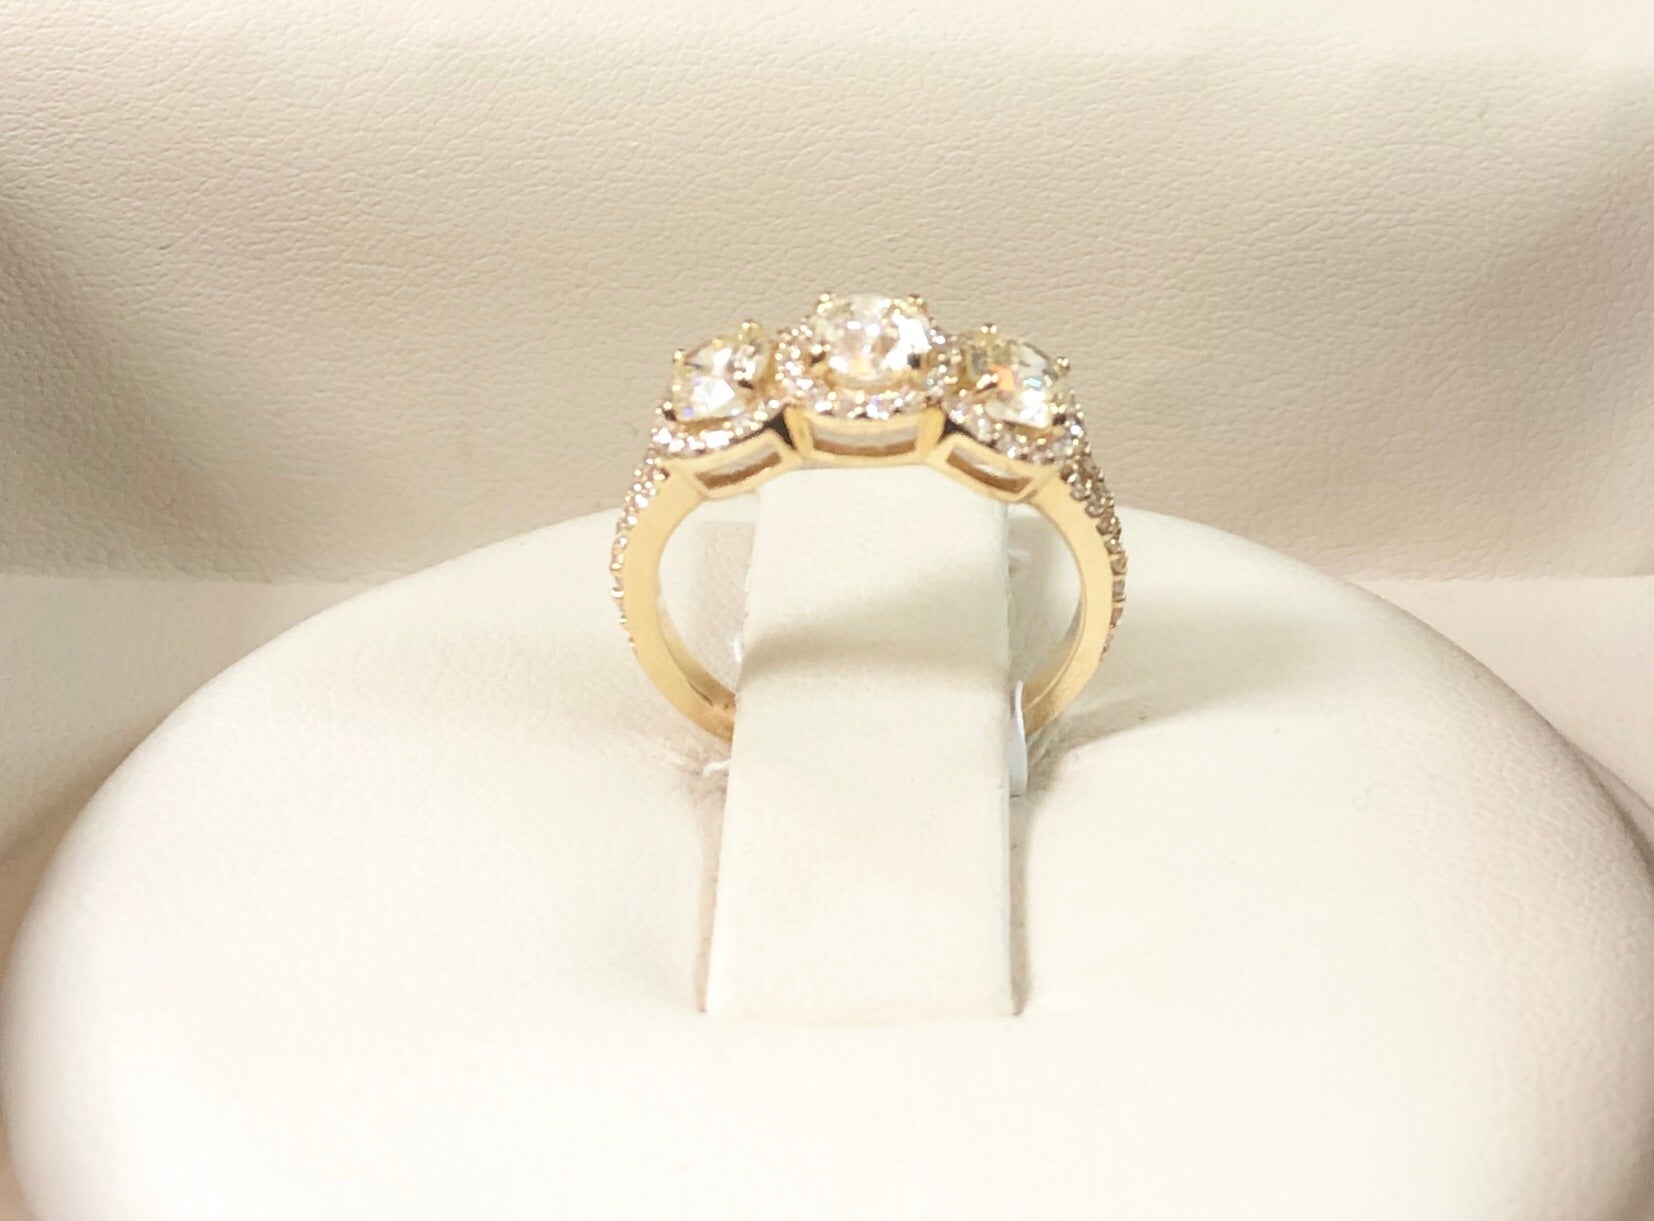 Three- Stone Anniversary Ring - Q&T Jewelry